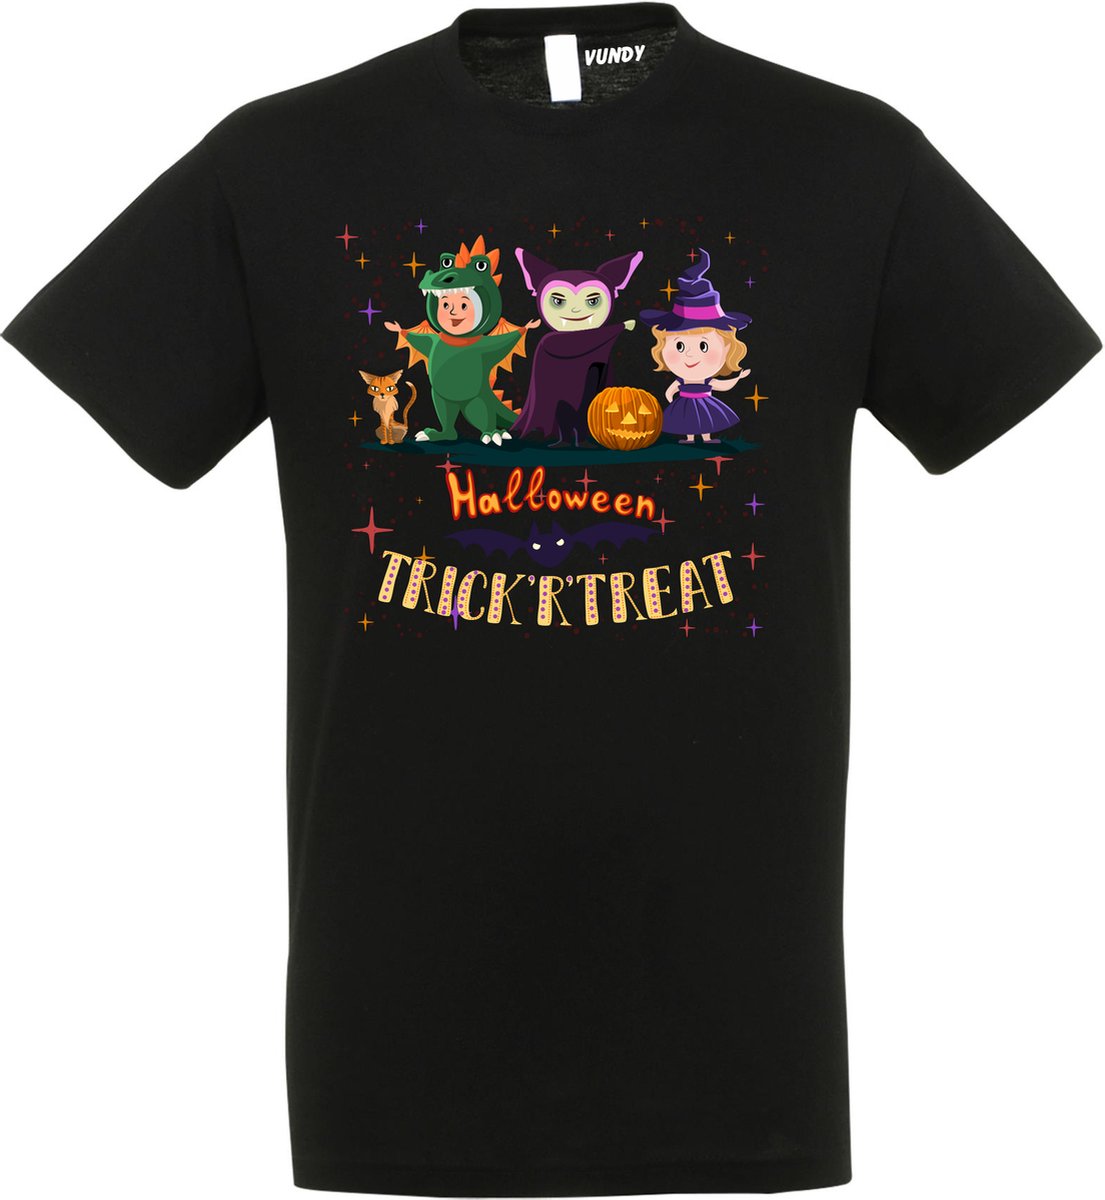 T-shirt Halloween TrickrTreat | Halloween kostuum kind dames heren | verkleedkleren meisje jongen | Zwart | maat S